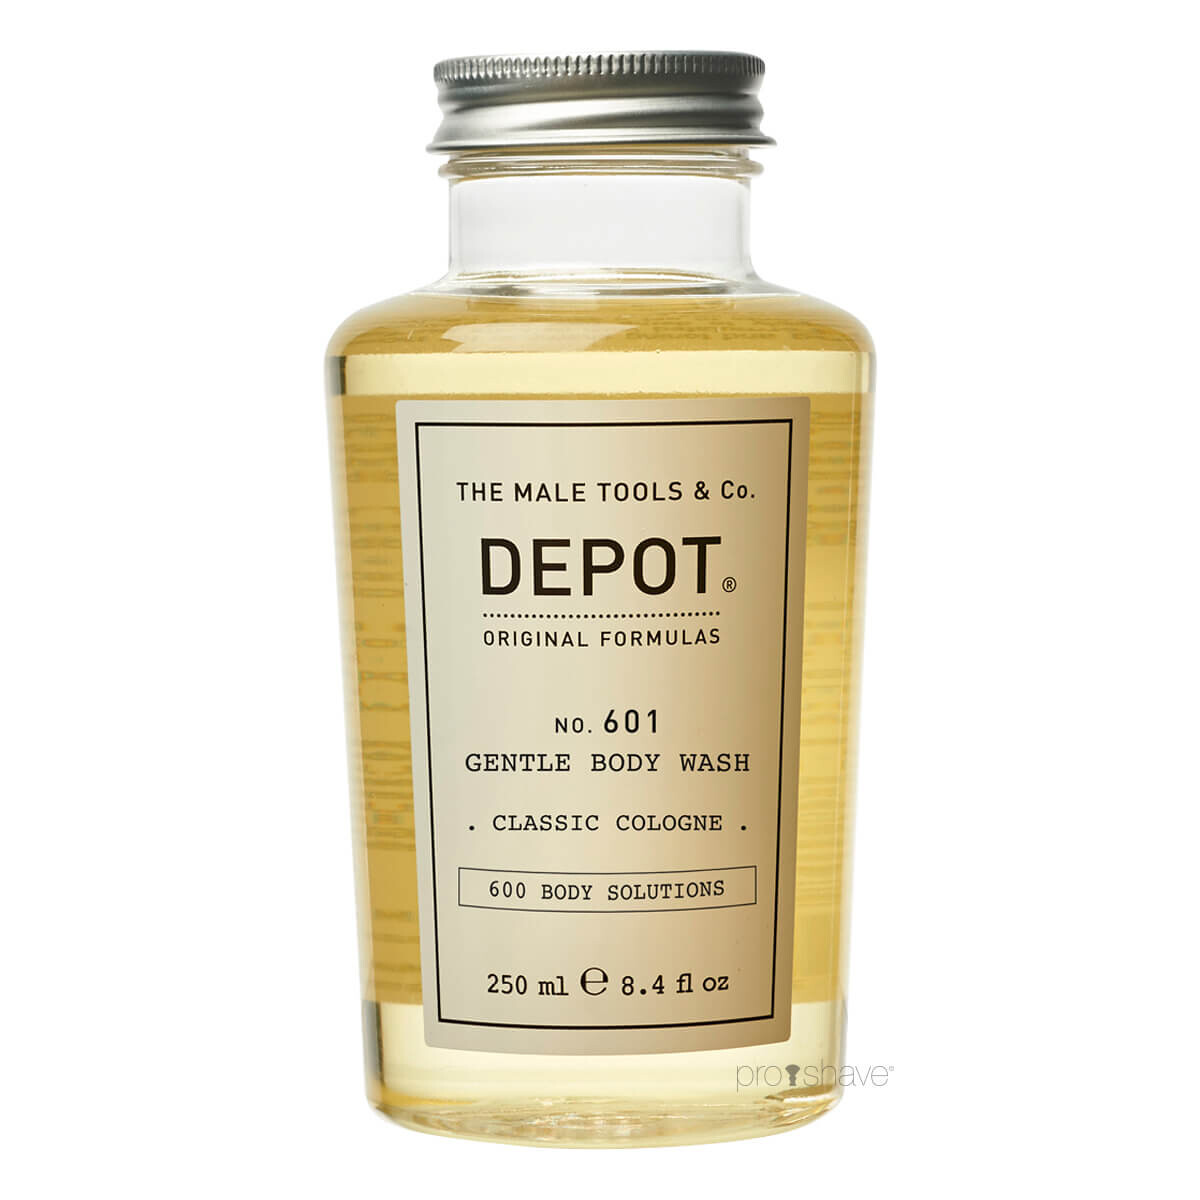 Billede af Depot Gentle Body Wash, Classic Cologne, No. 601, 250 ml.